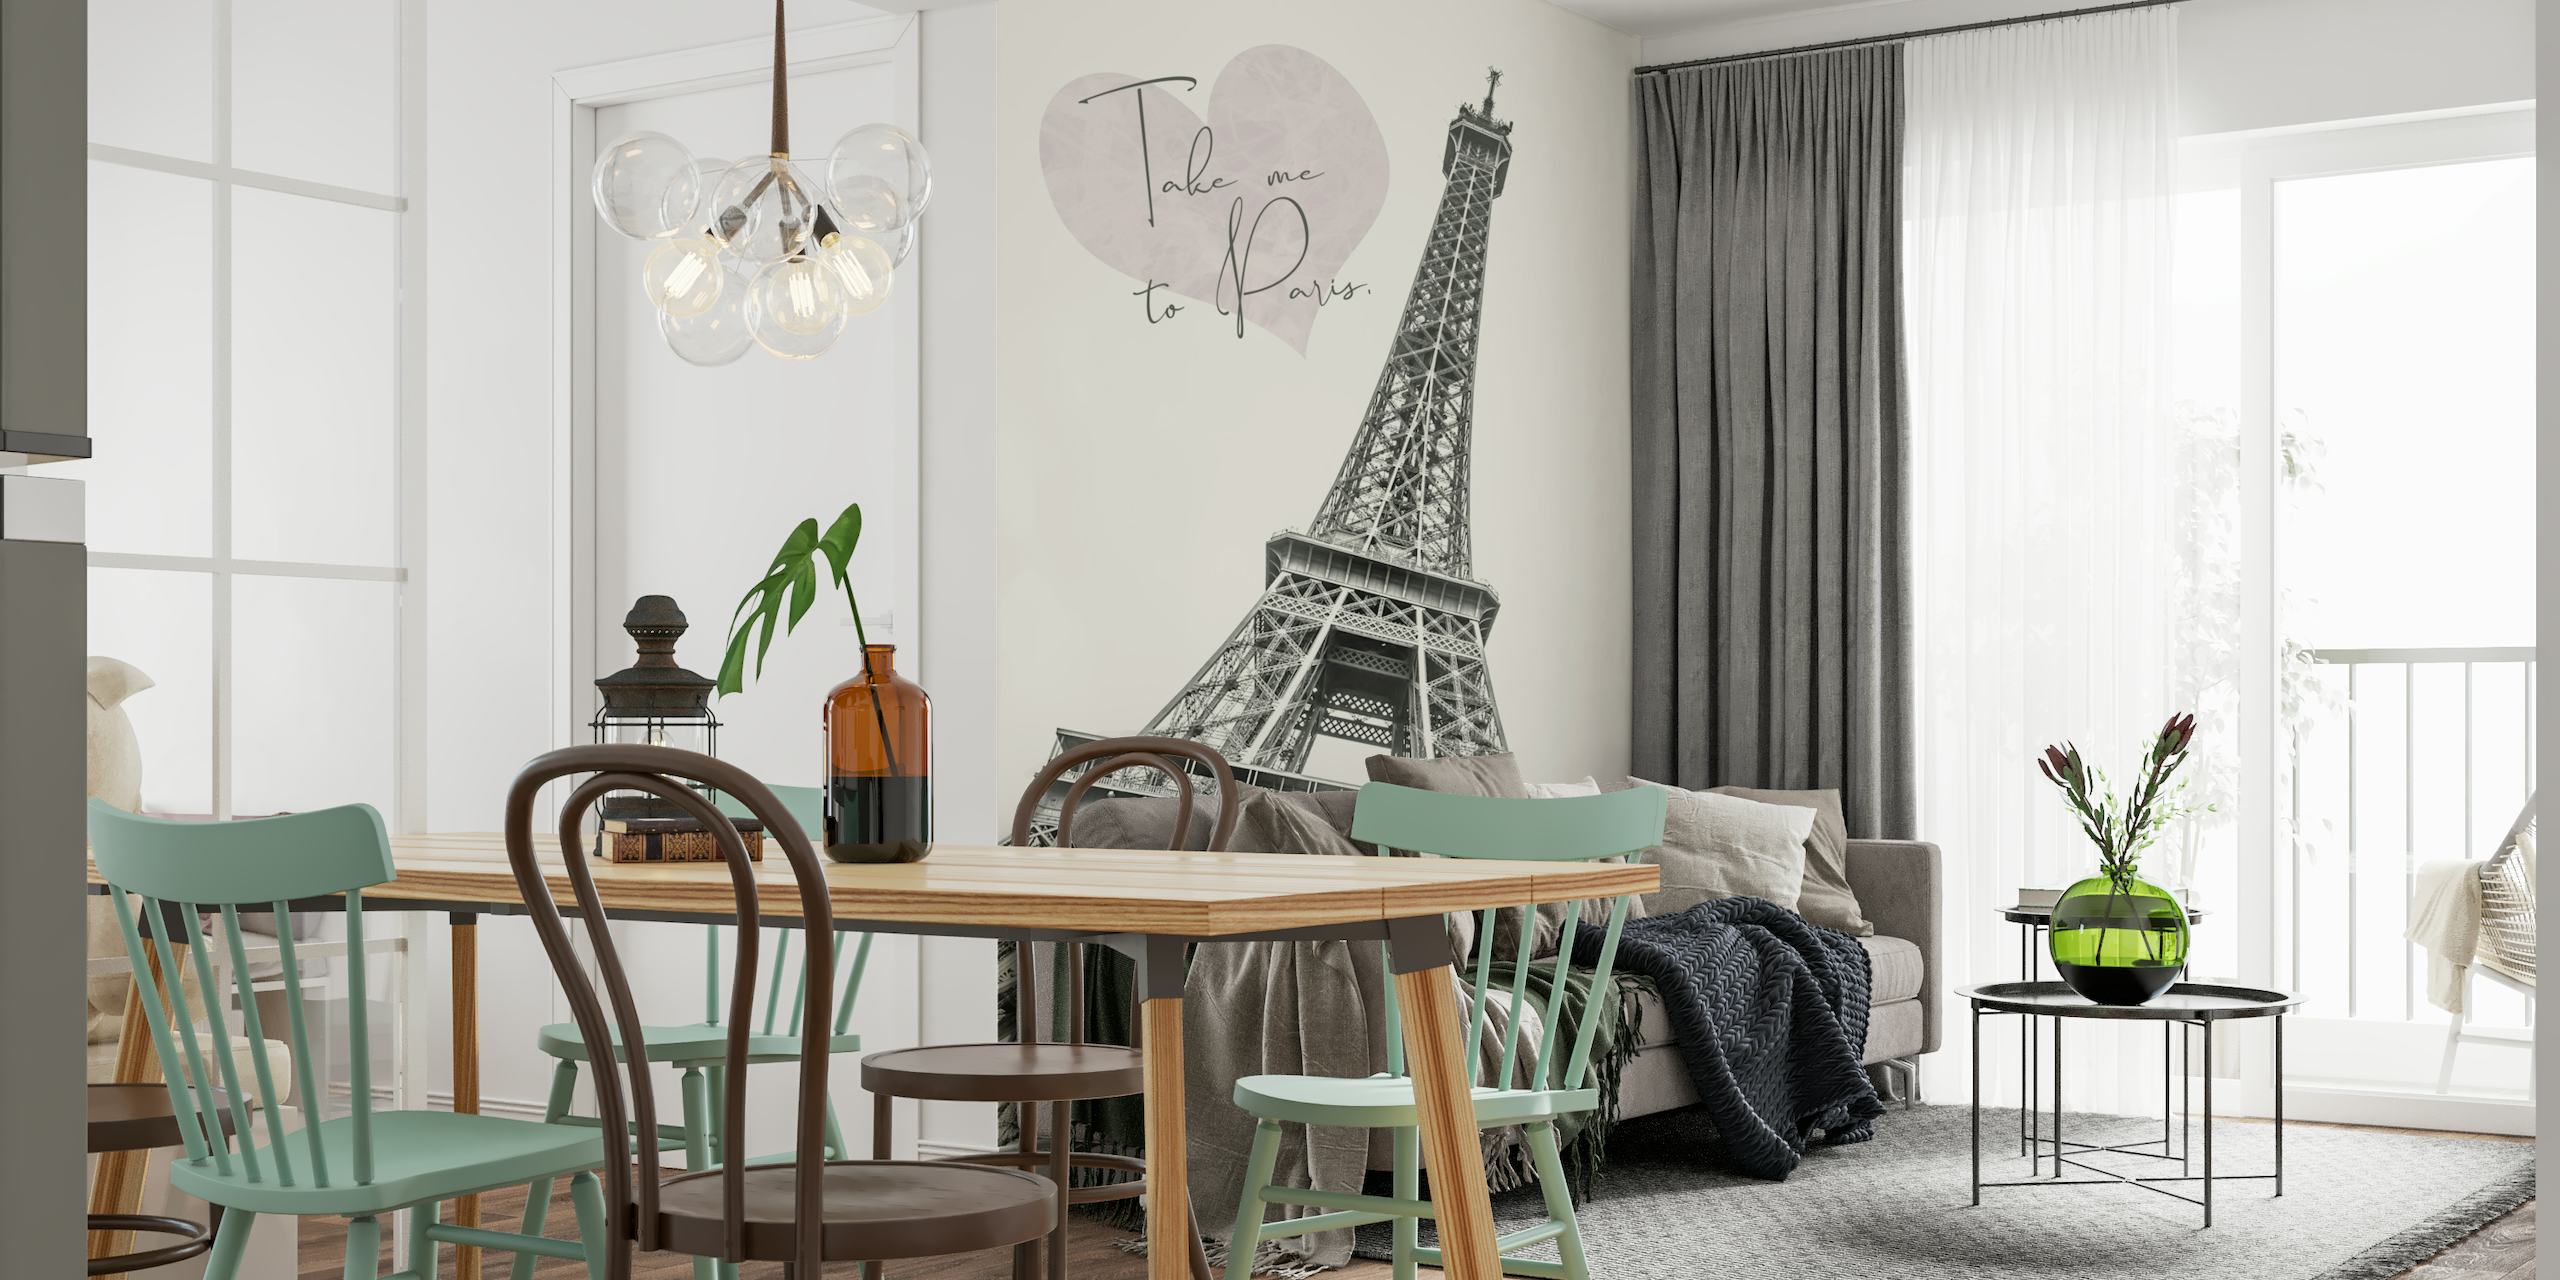 Romantic Eiffel Tower - Take me to Paris wallpaper